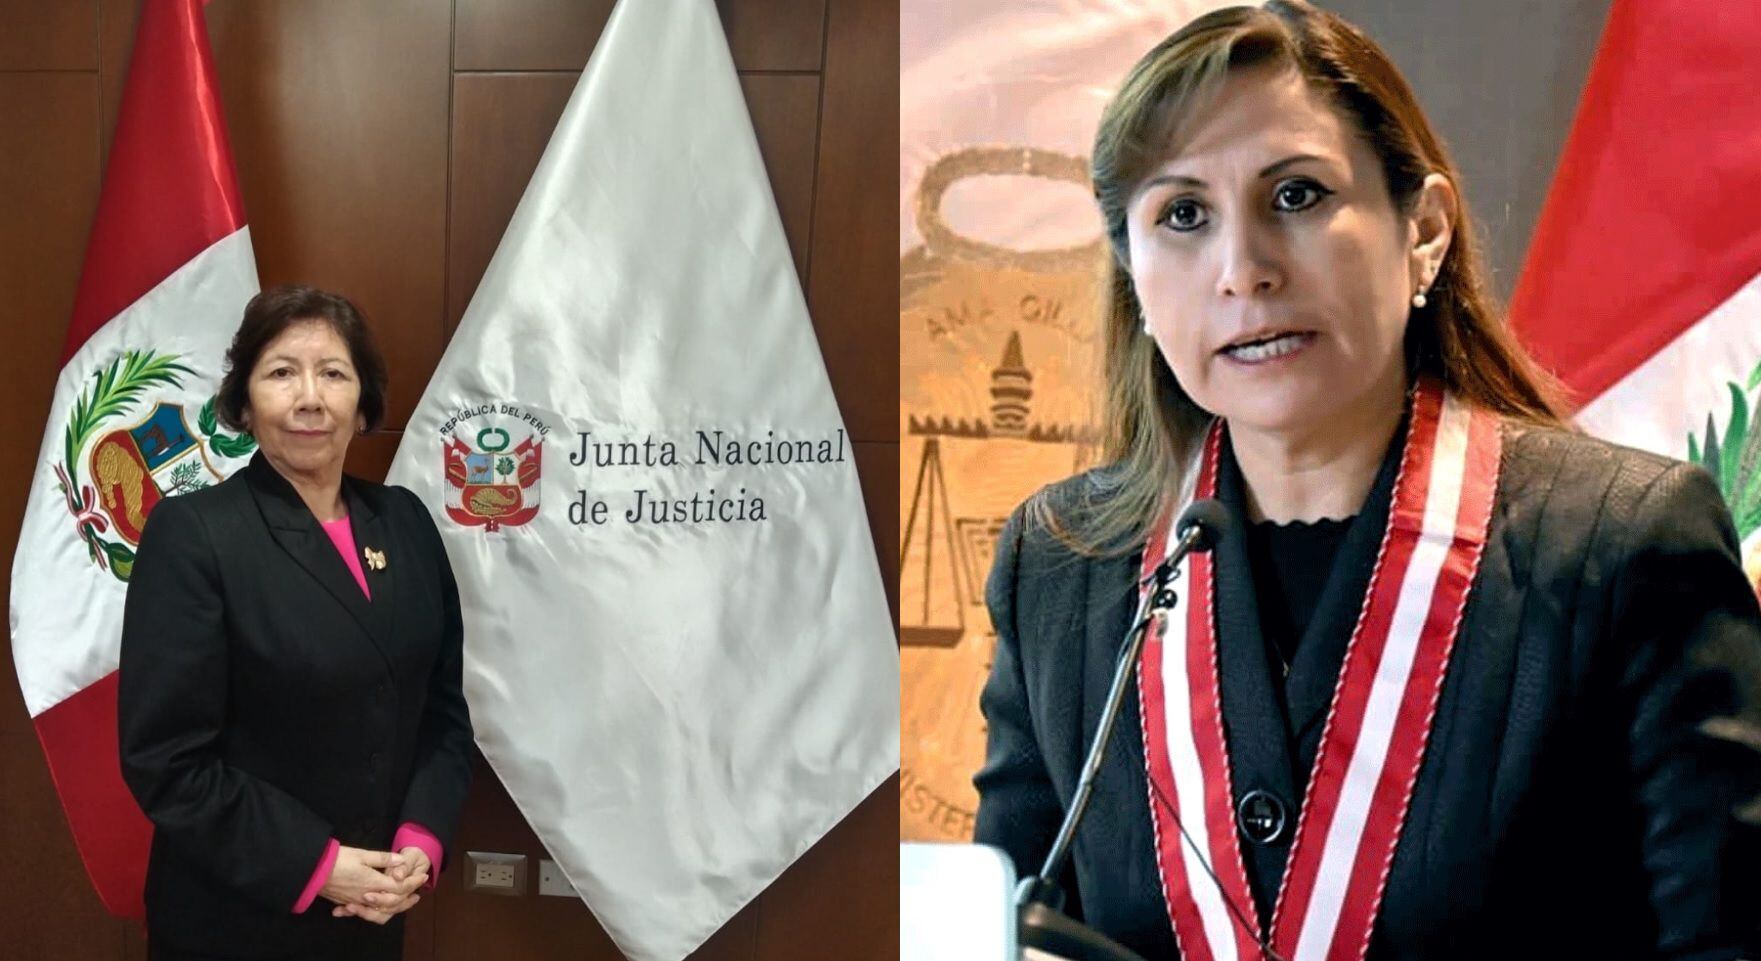 Imelda Tumialán, presidenta de la Junta Nacional de Justicia, advirtió que el caso de la fiscal de la Nación, Patricia Benavides, podría ser tomado por otros personas que investigan para obtener impunidad.